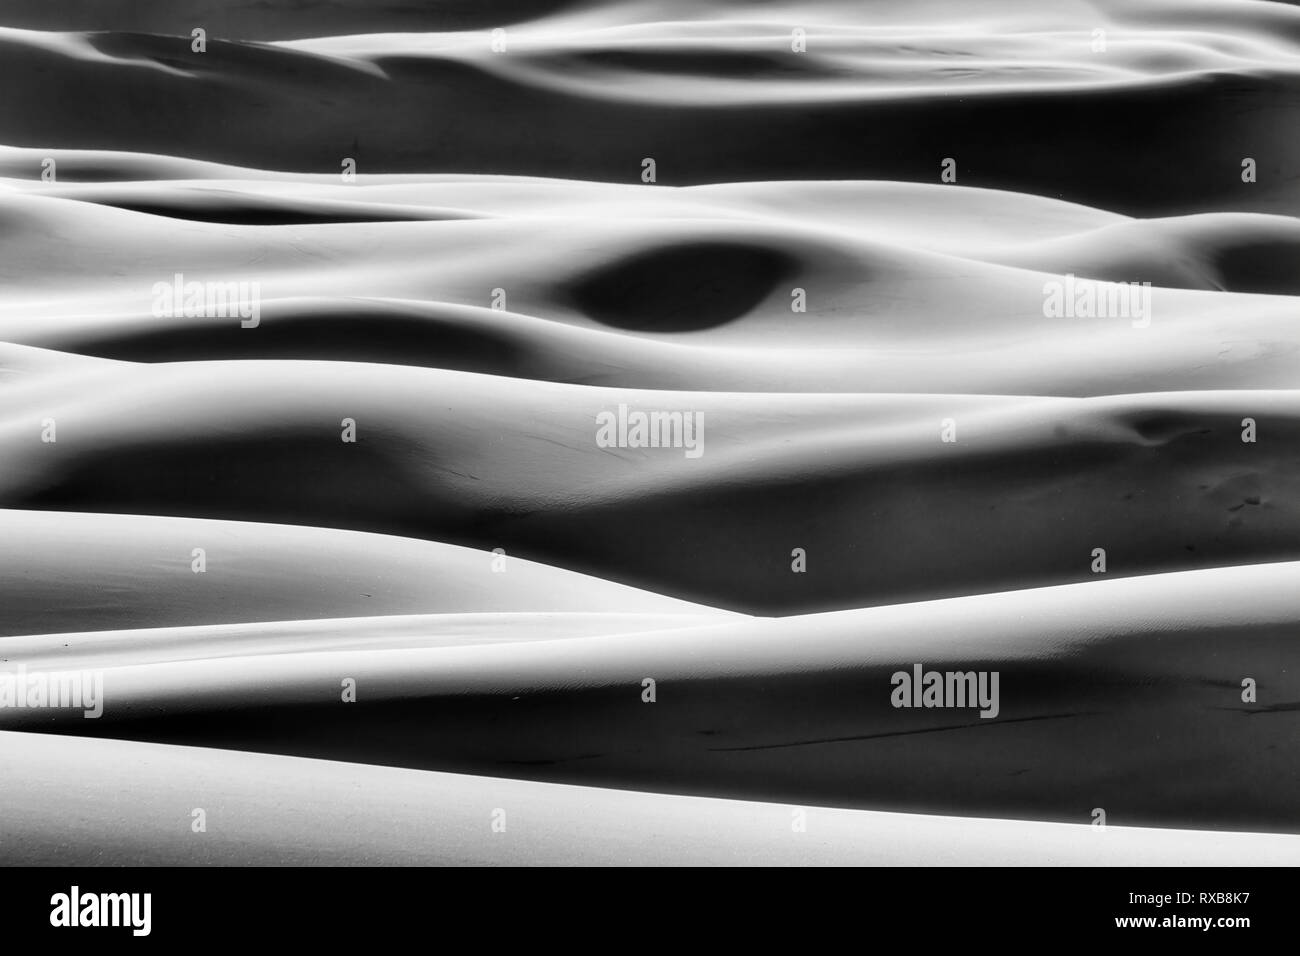 Impresión en escala de grises de formas simples formadas por la luz del sol y sombras sobre infinitas olas de dunas de arena en el árido desierto sin vida de Australian Pacific coas Foto de stock